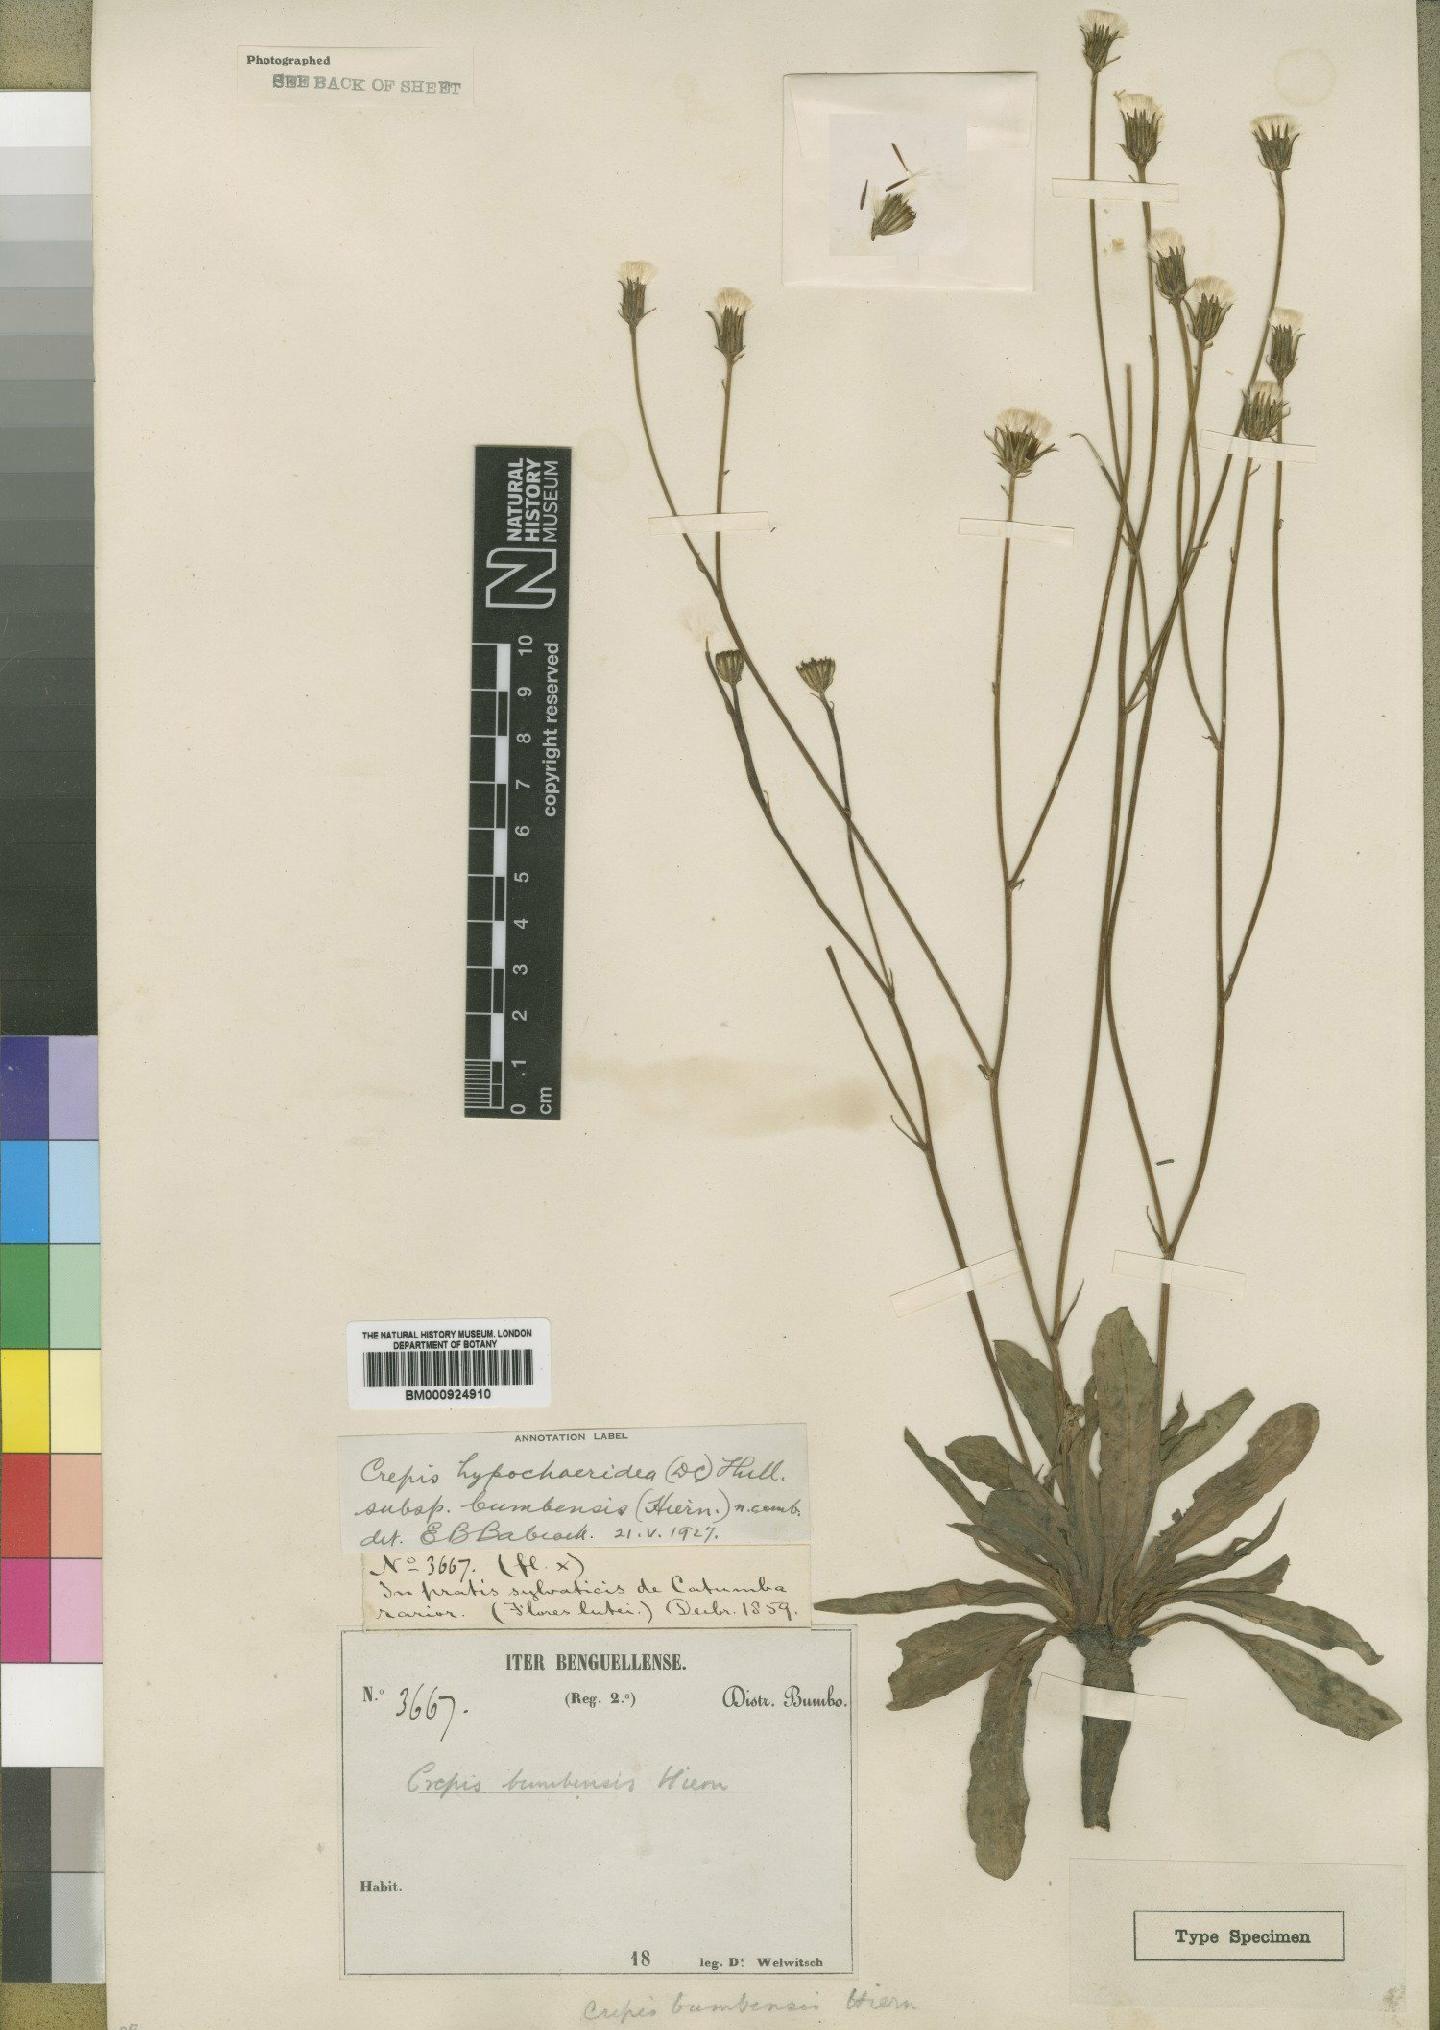 To NHMUK collection (Crepis newii subsp. bumbensis (Hiern) Babc; Type; NHMUK:ecatalogue:4553780)